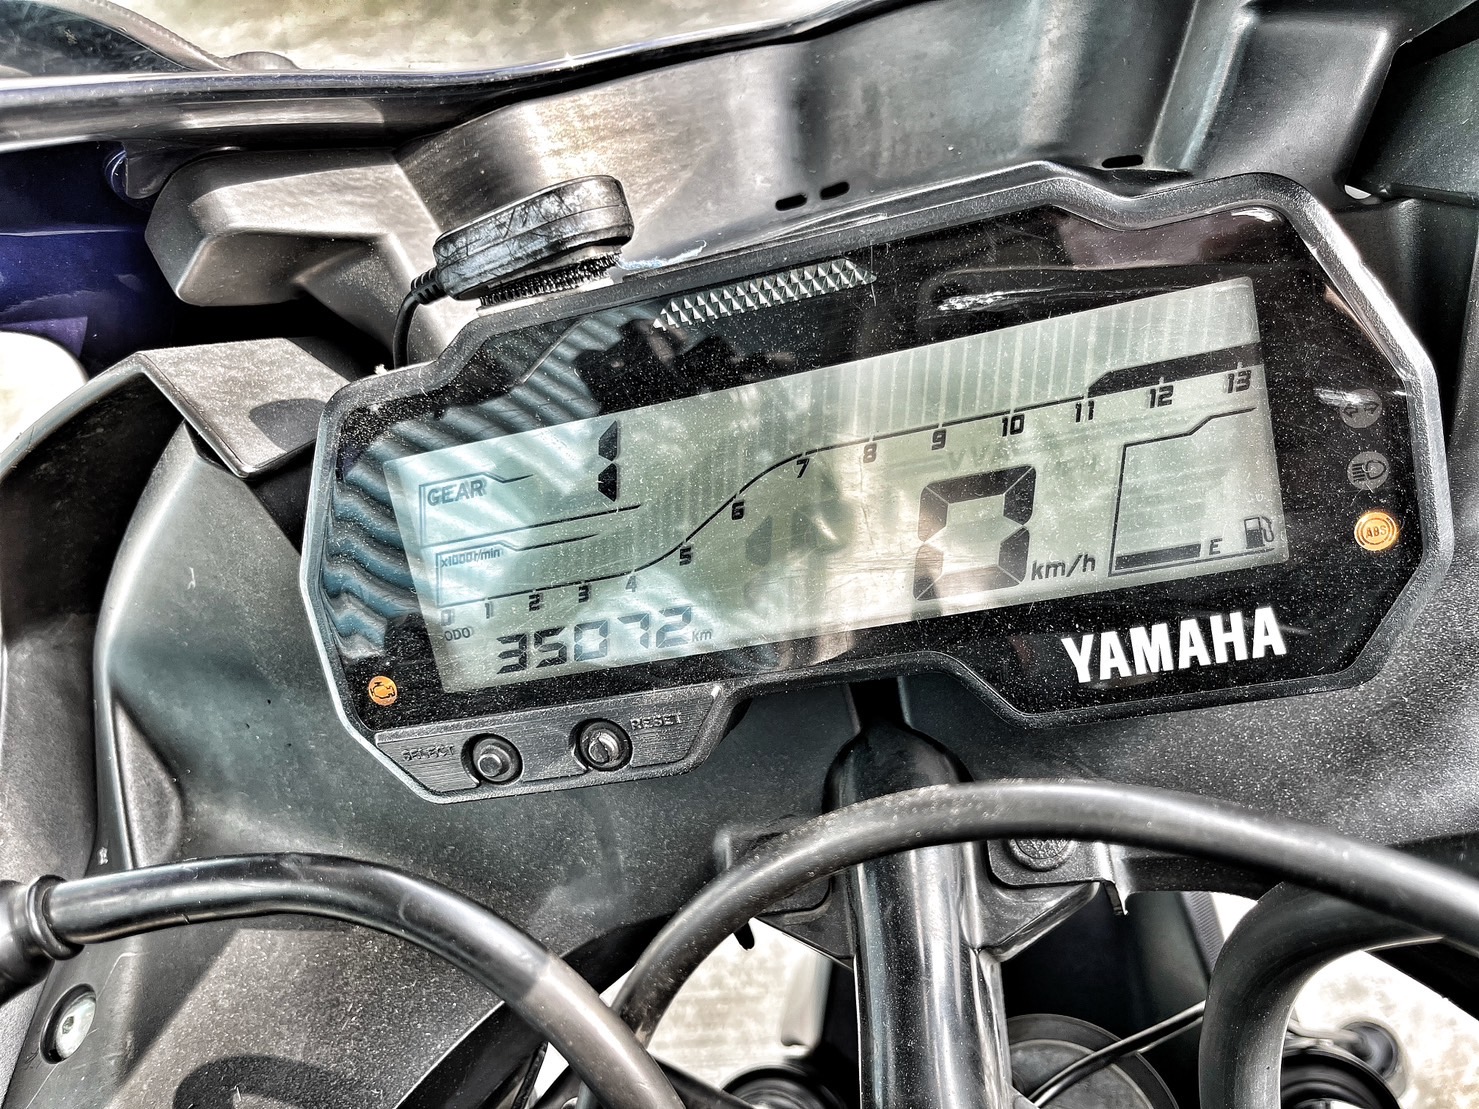 YAMAHA YZF-R15 - 中古/二手車出售中 行車記錄器 可調式拉桿 超多改裝 無事故 小資族二手重機買賣 | 小資族二手重機買賣